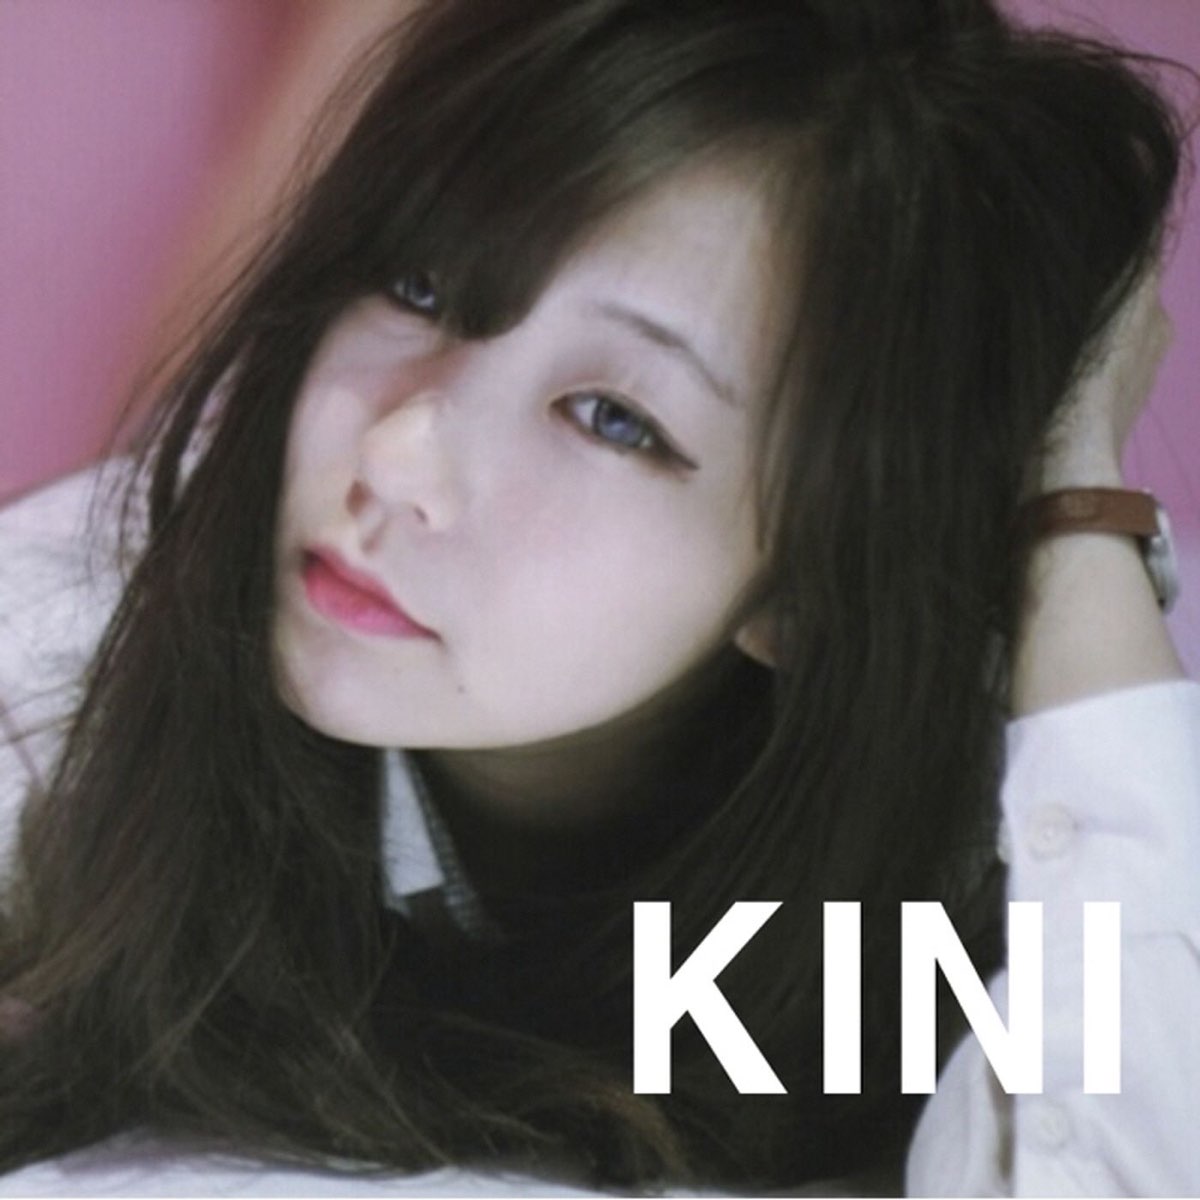 ‎이른 아침부터 - Single by Kini on Apple Music